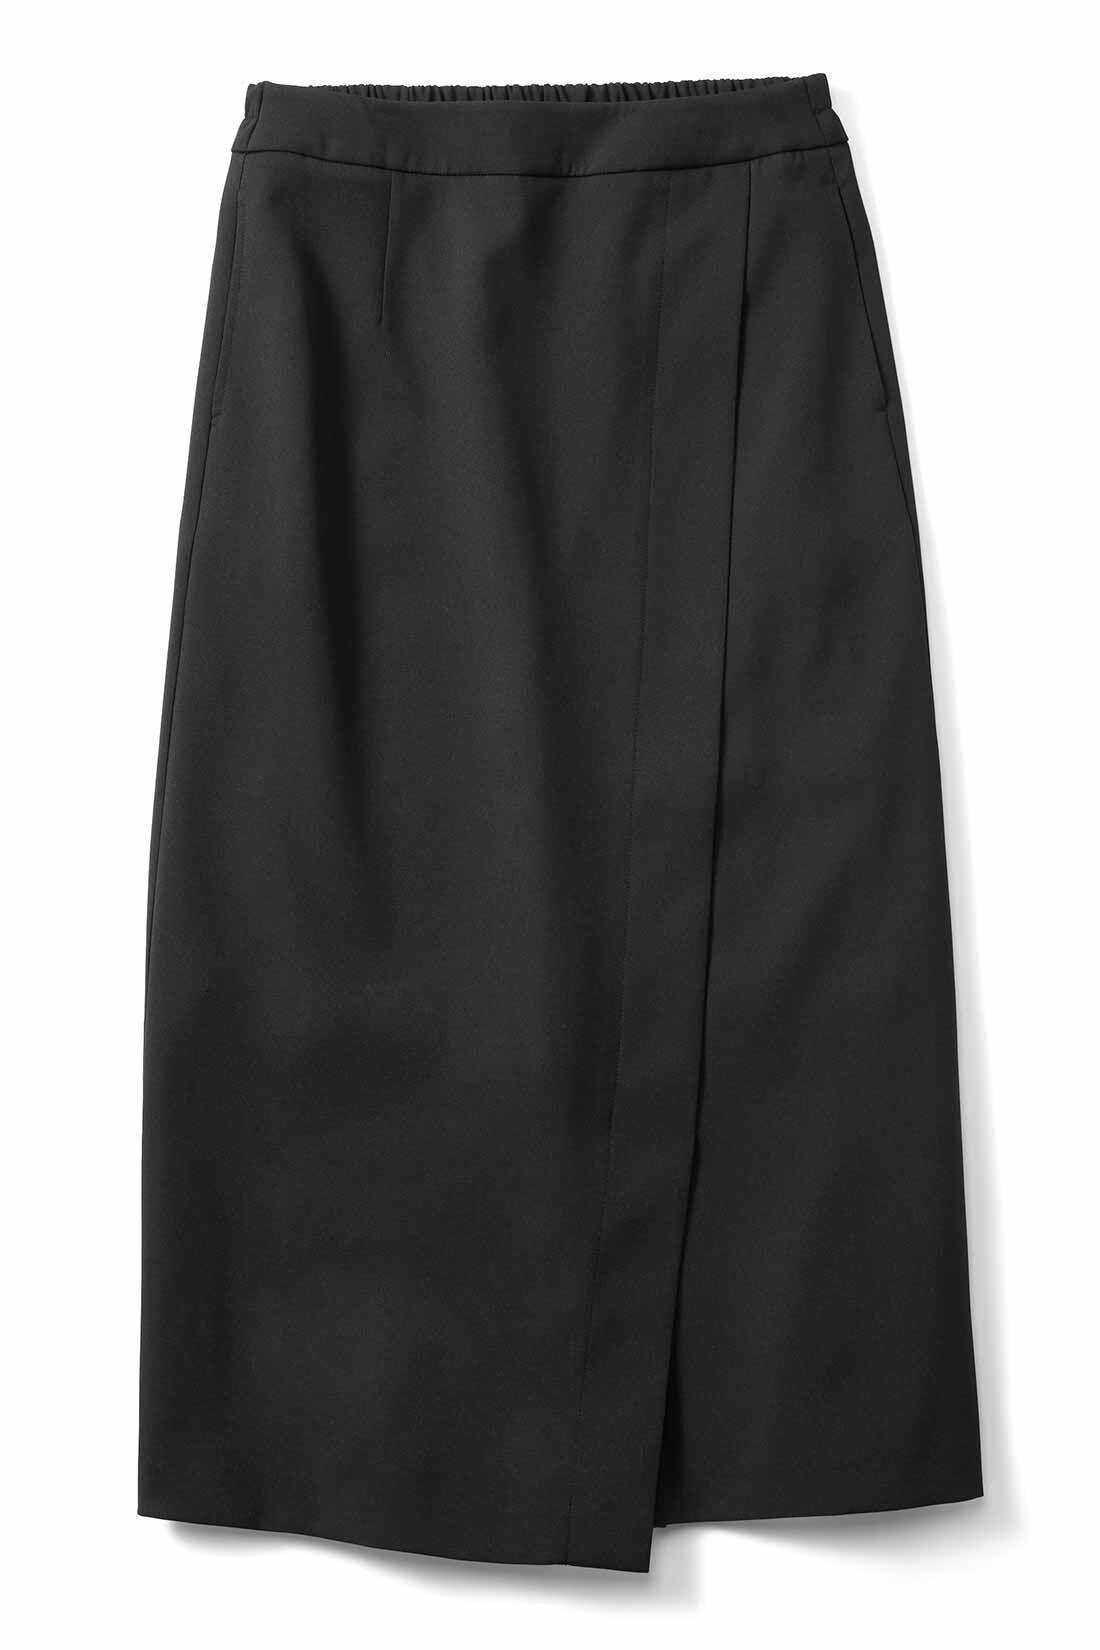 IEDIT[イディット]　伸びやかなダブルクロス素材のフロント切り替えIラインスカート|〈ブラック〉